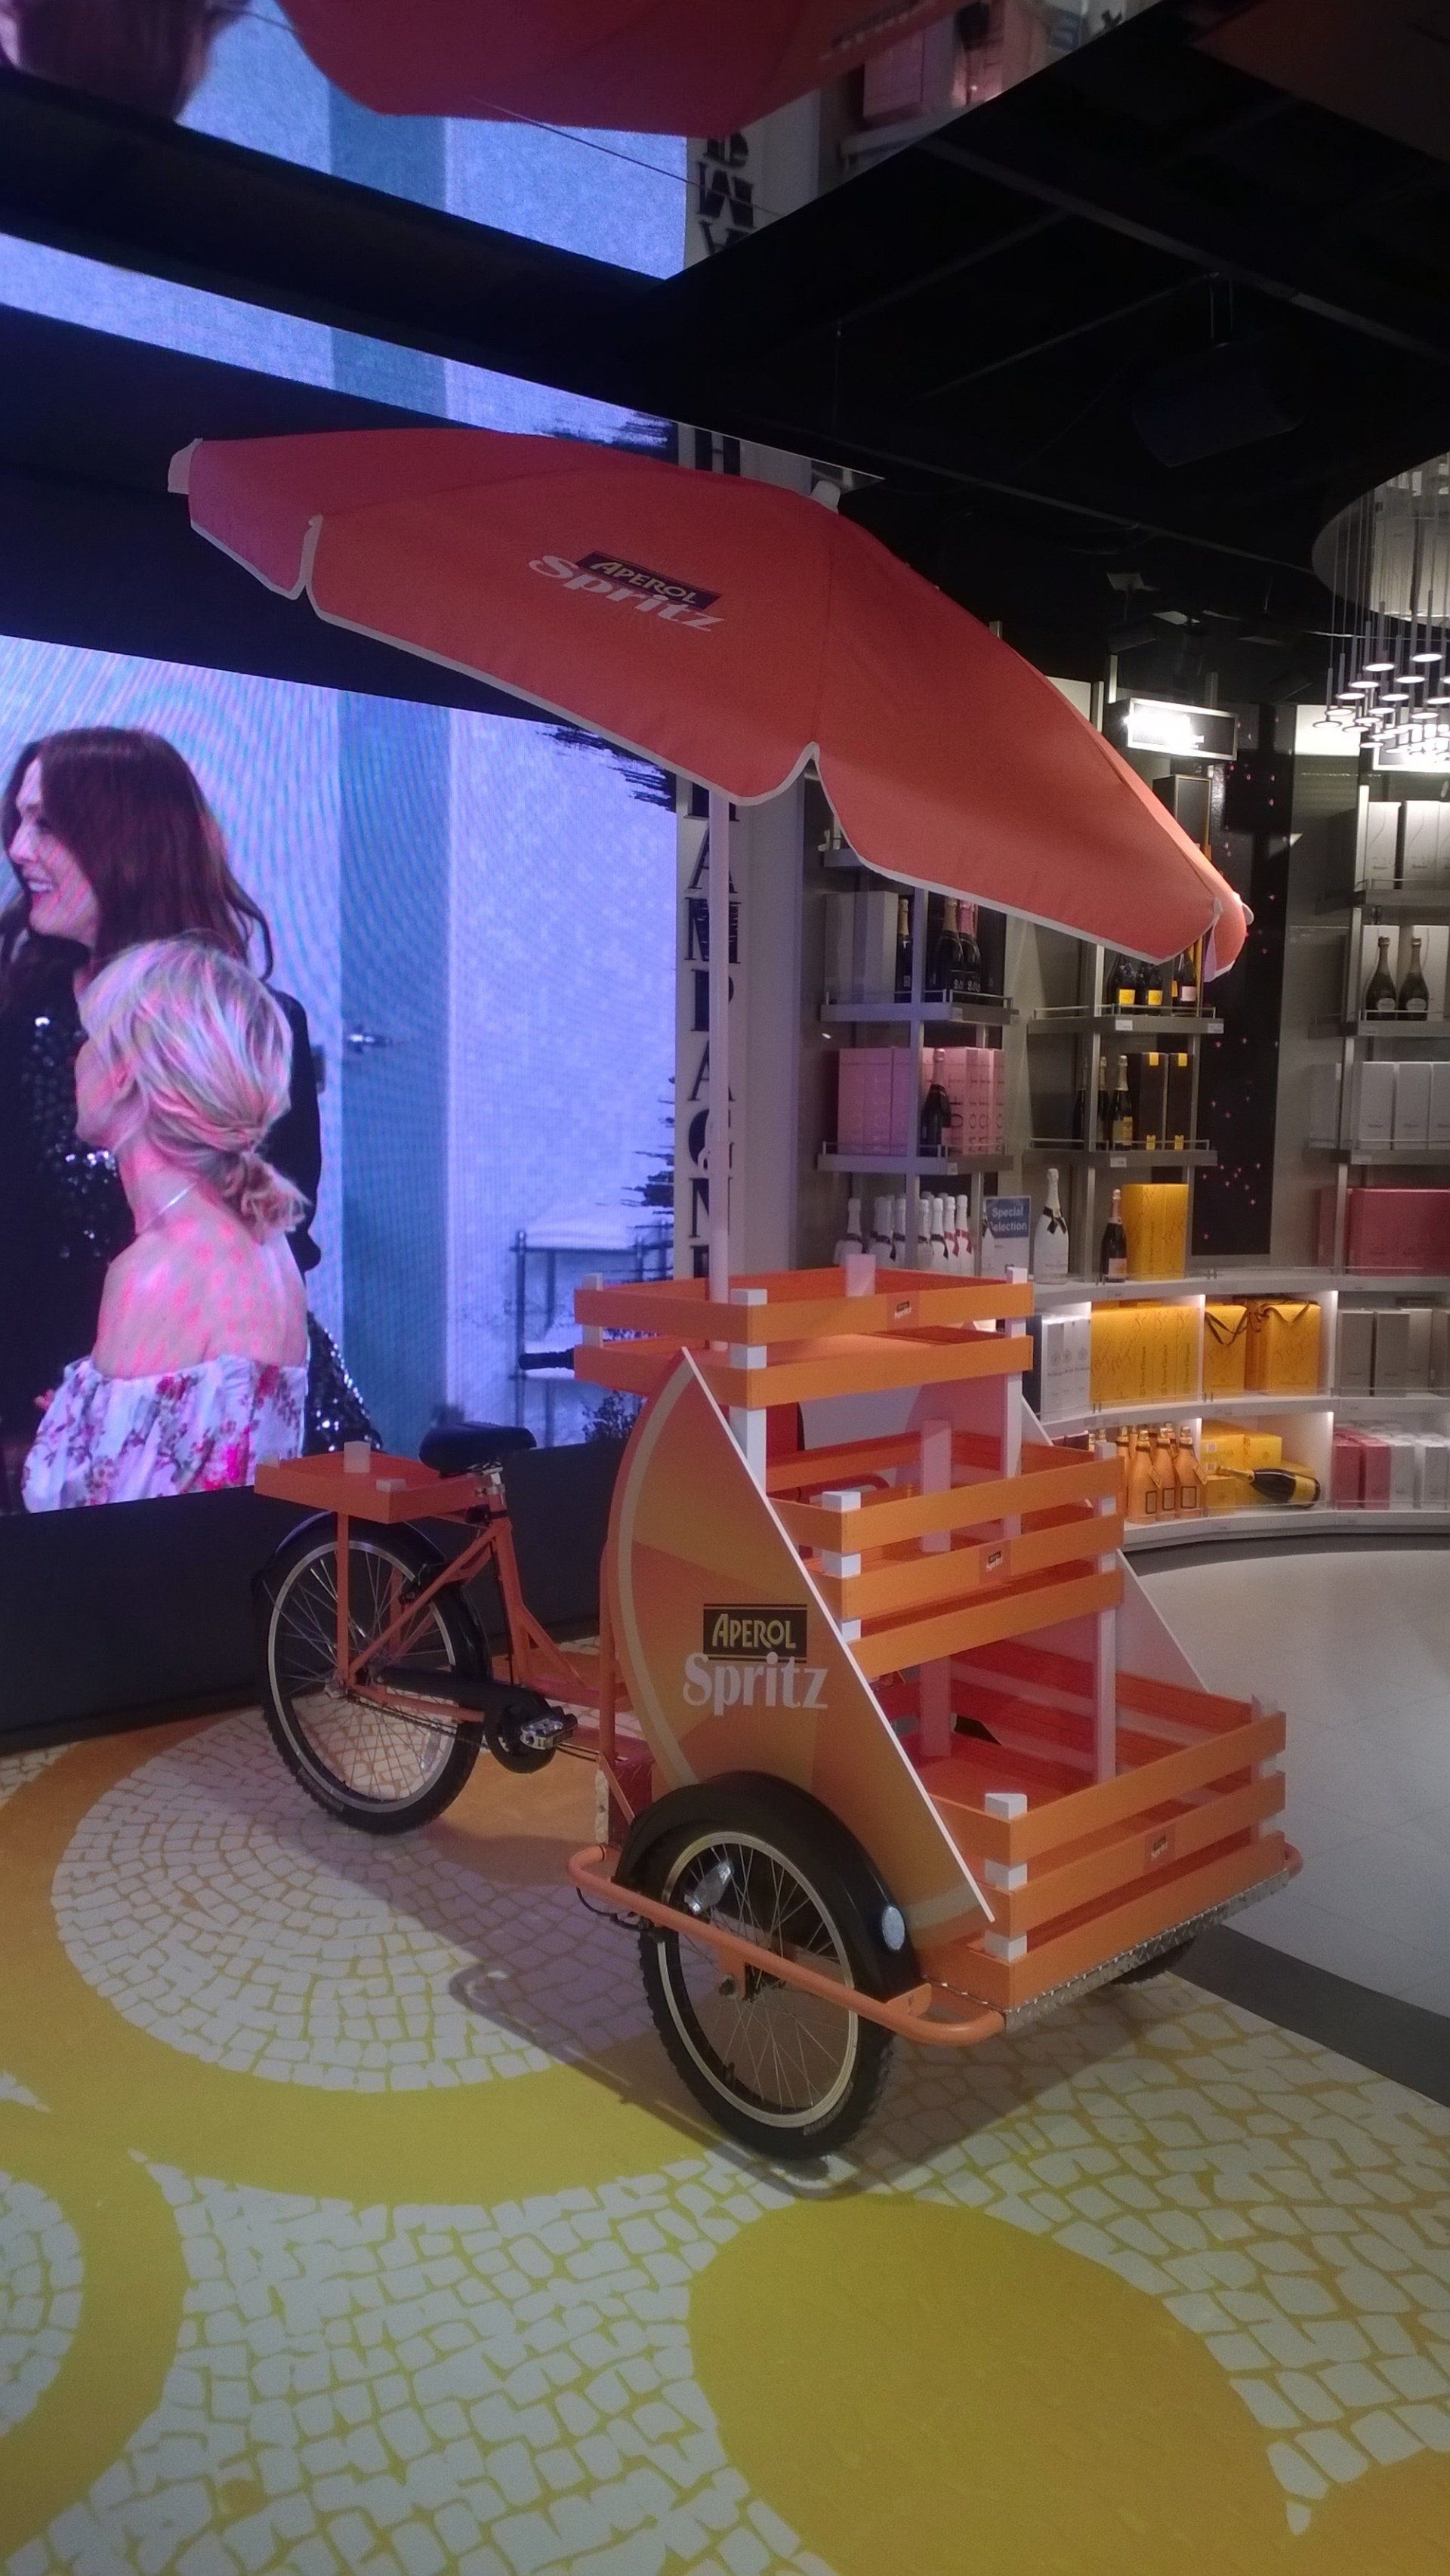 triciclo cargo bike pubblicitaria per promozione prodotti aperol spritz